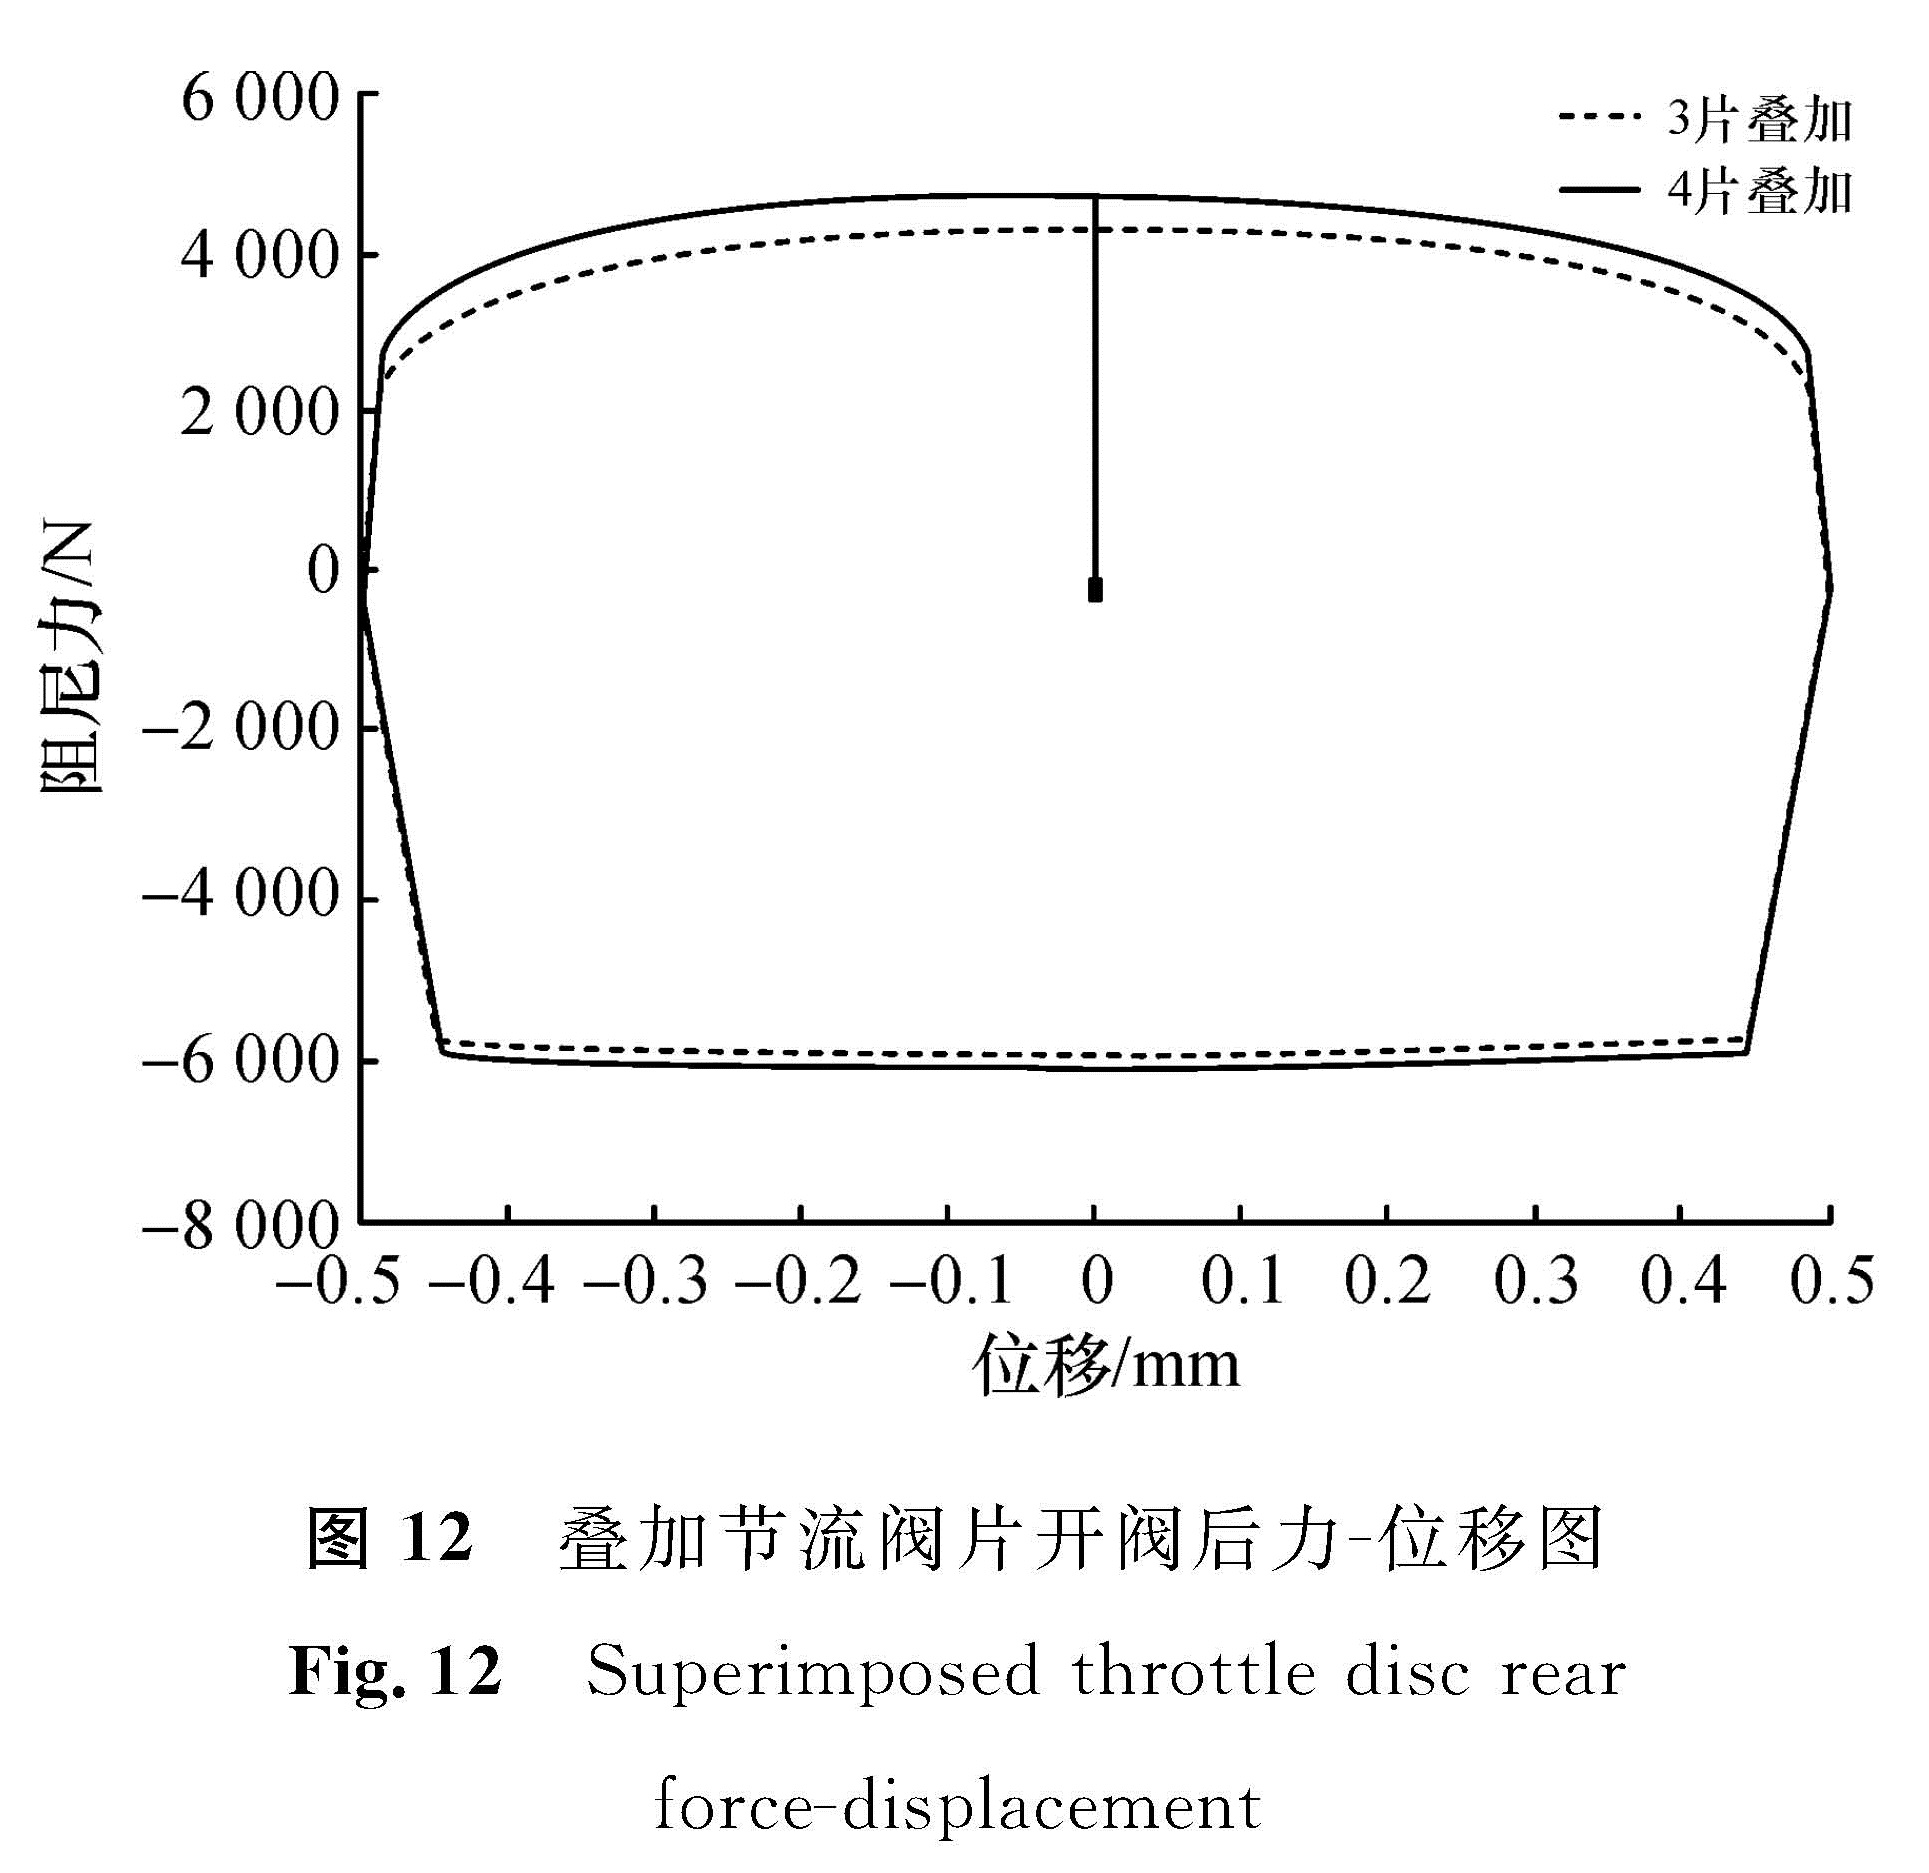 图 12 叠加节流阀片开阀后力-位移图<br/>Fig.12 Superimposed throttle disc rear force-displacement